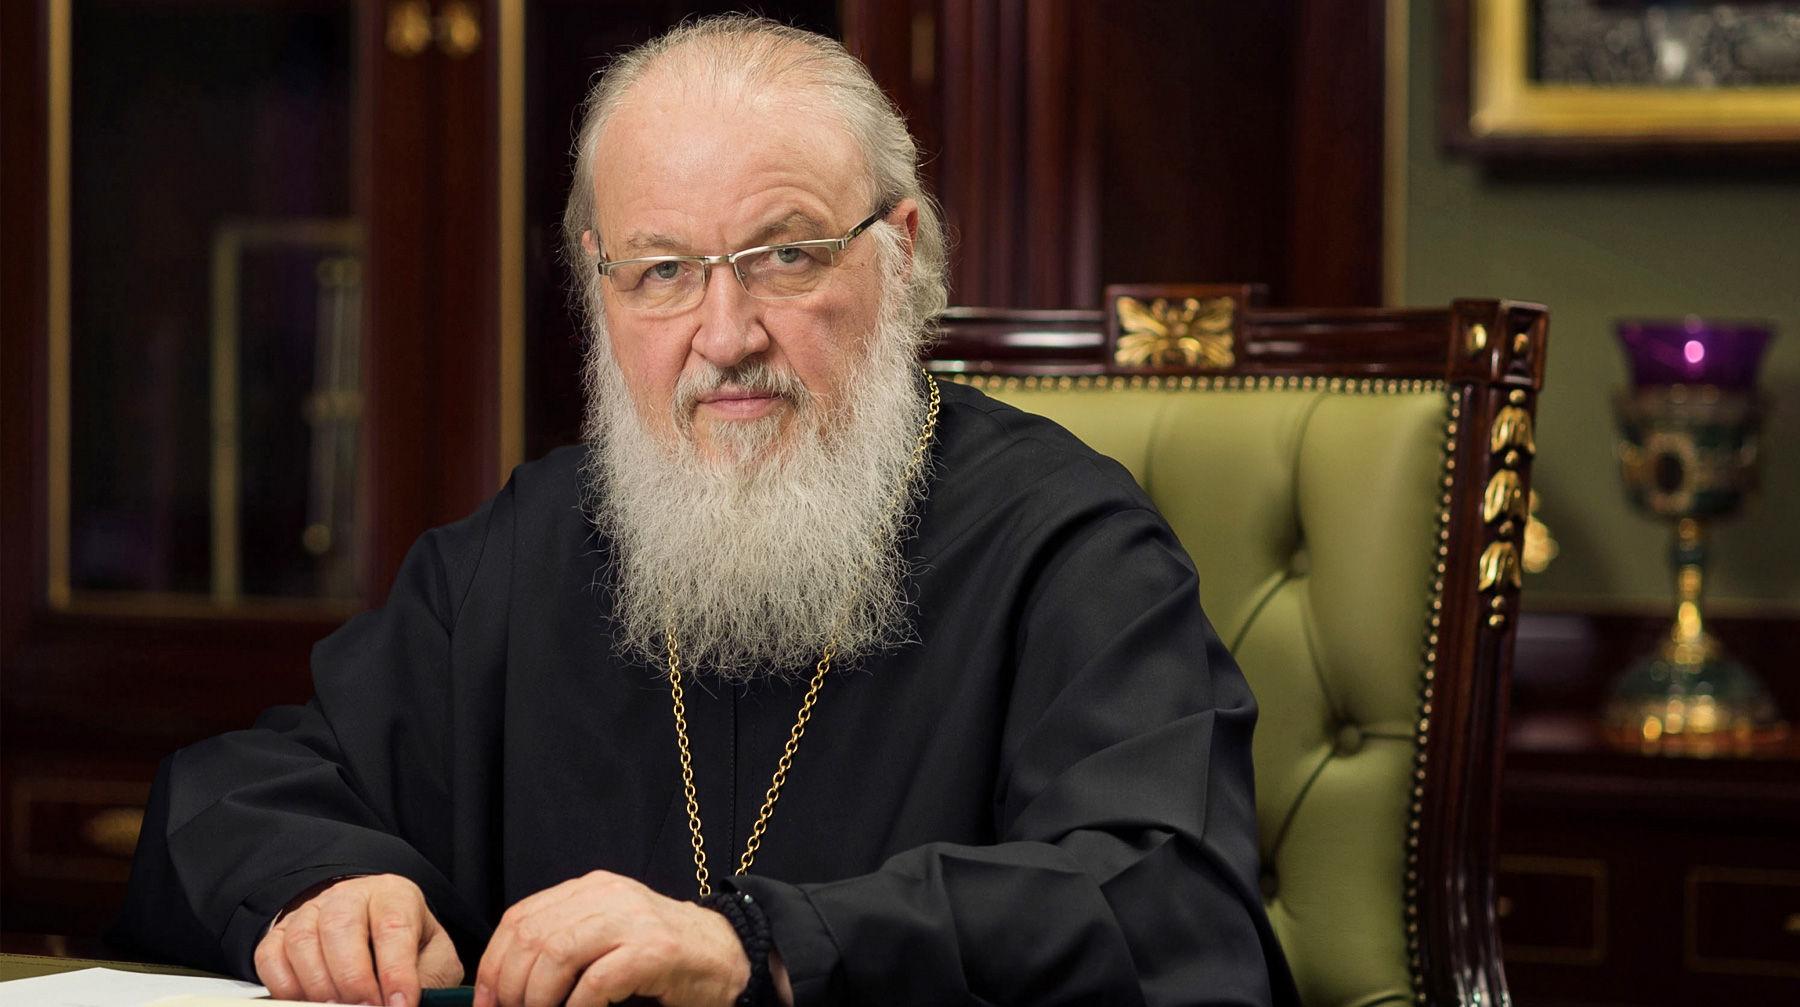 Глава Русской православной церкви также заявил, что атеистическое отношение не смогло победить Бога Патриарх Московский и всея Руси Кирилл